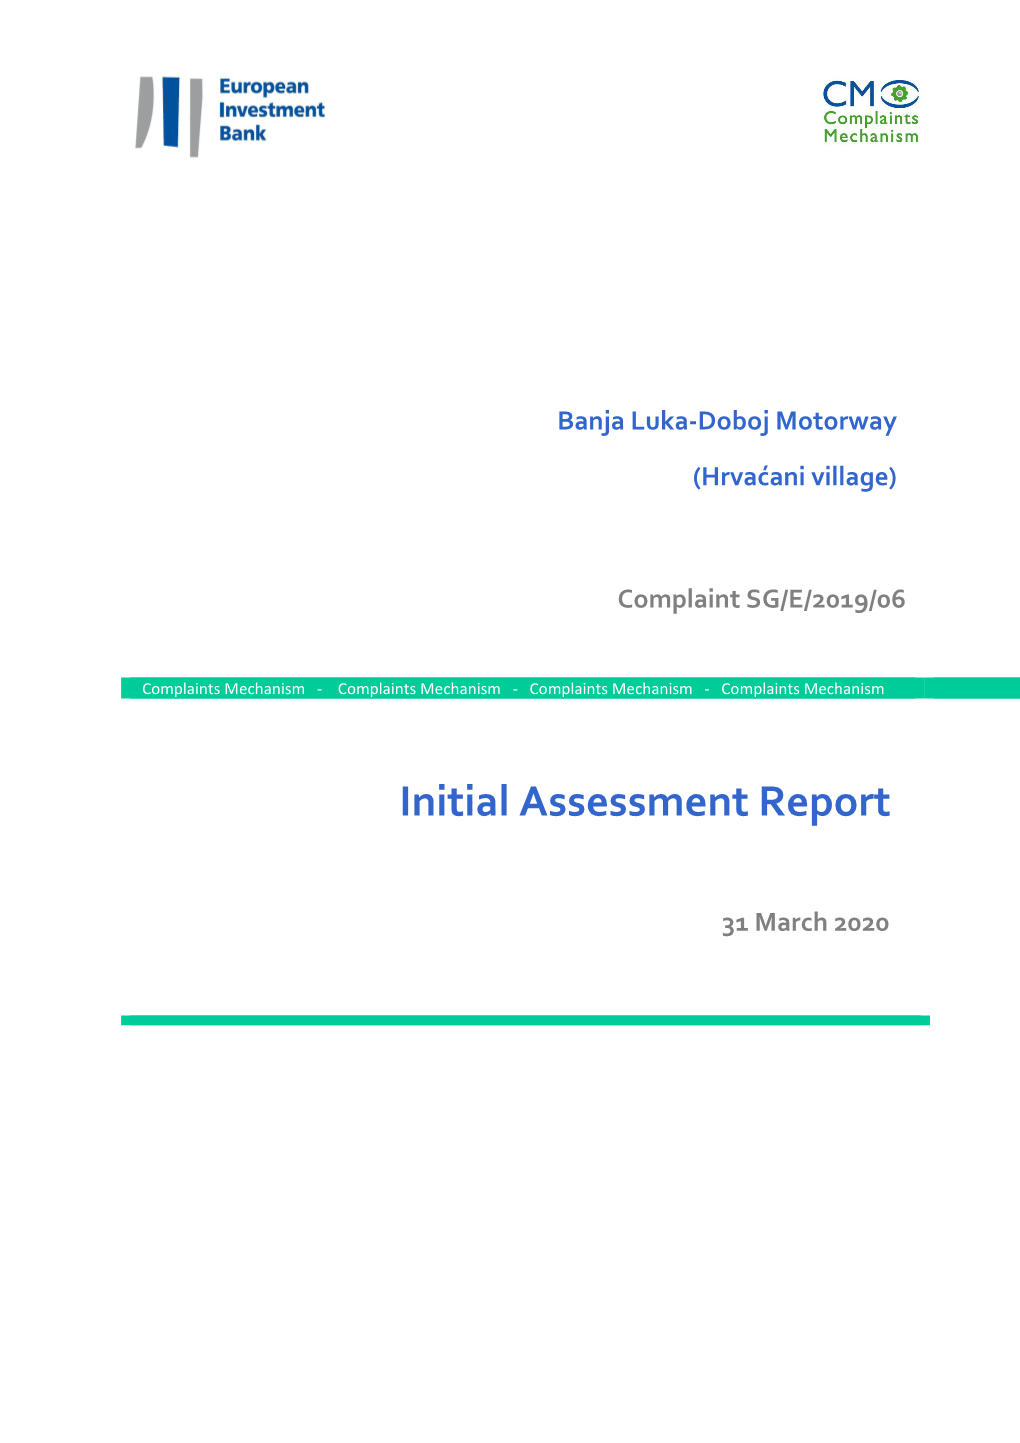 Initial Assessment Report